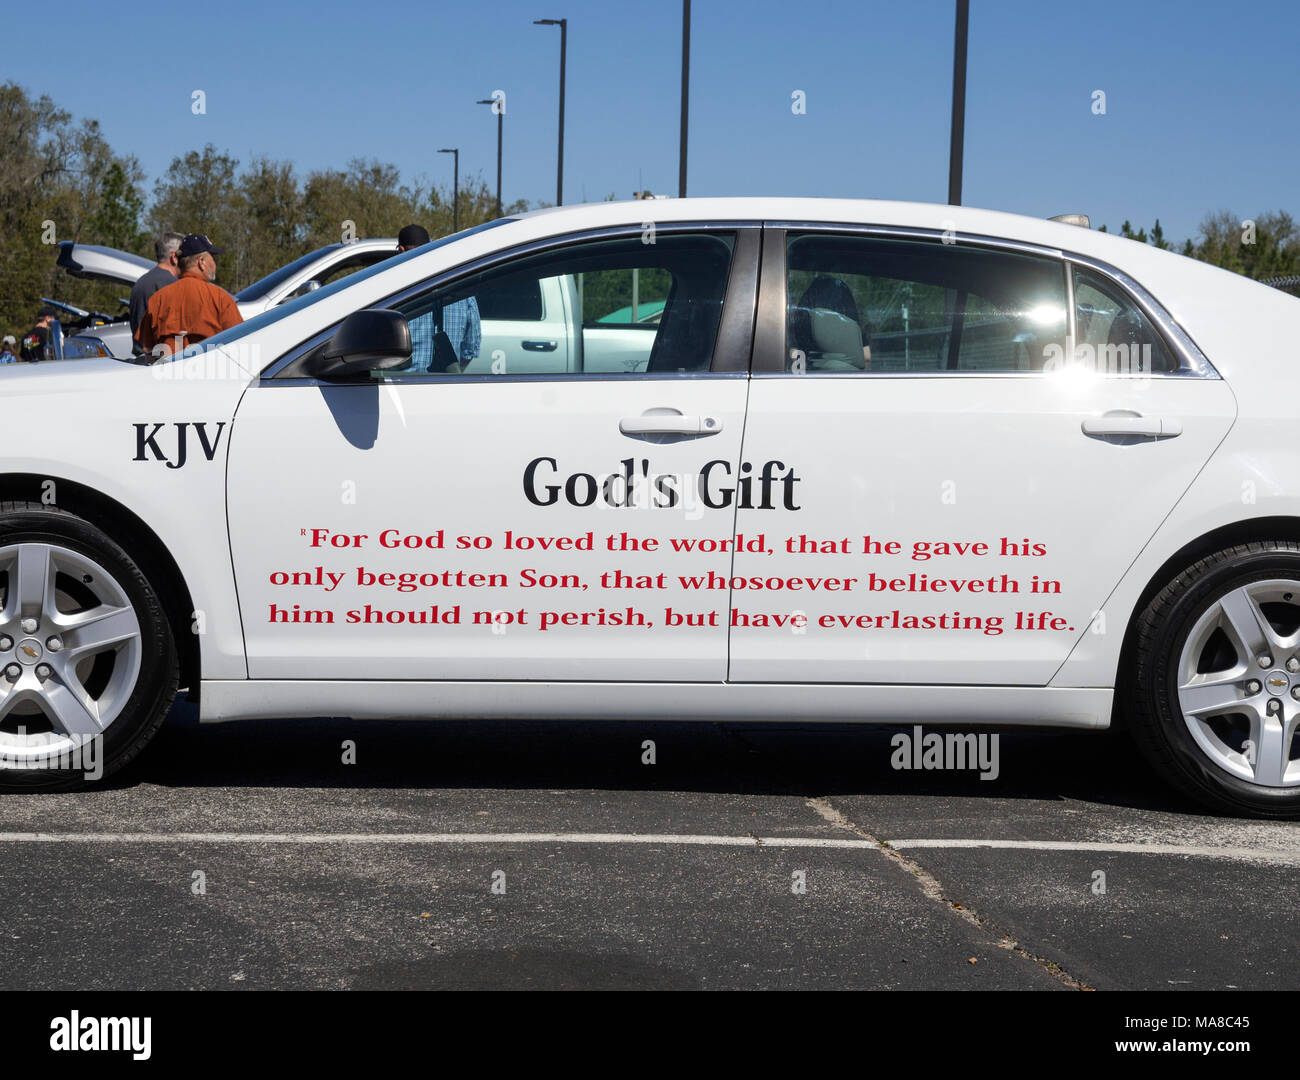 Auto Show di Ft. Bianco, Florida. Auto con Giovanni 3:16 versetto biblico sul lato. Foto Stock